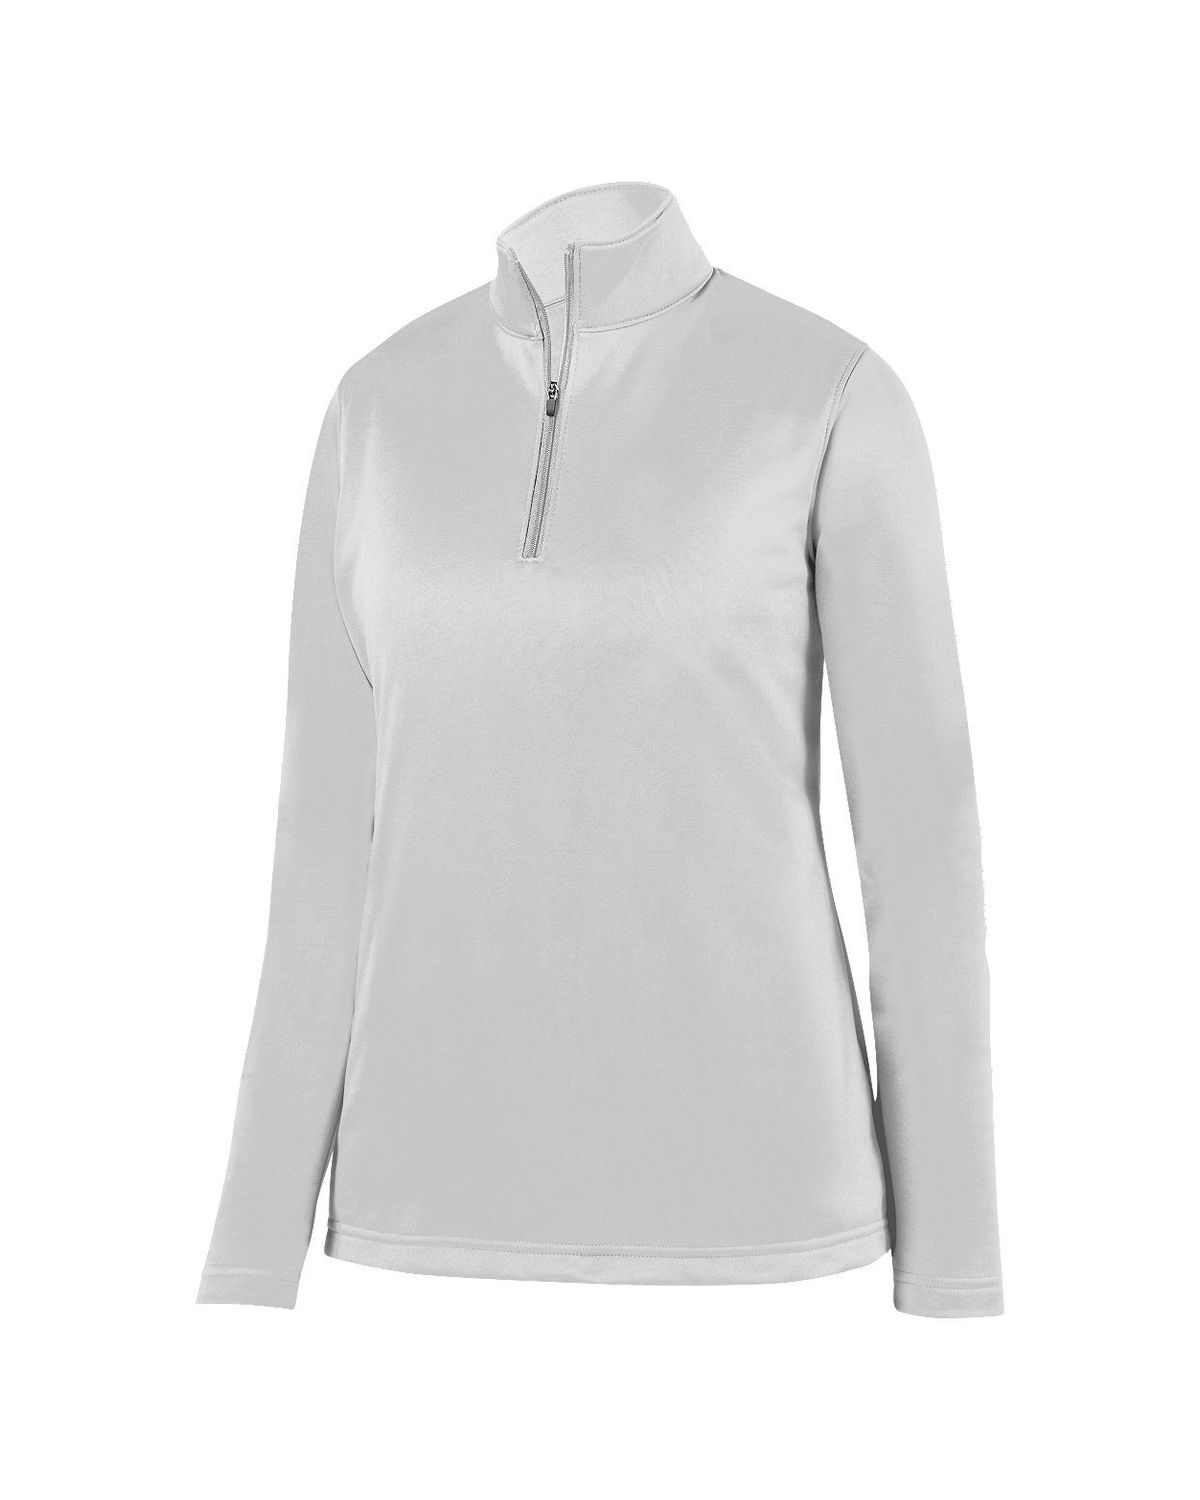 'Augusta Sportswear 5509 Ladies Wicking Fleece Pullover'